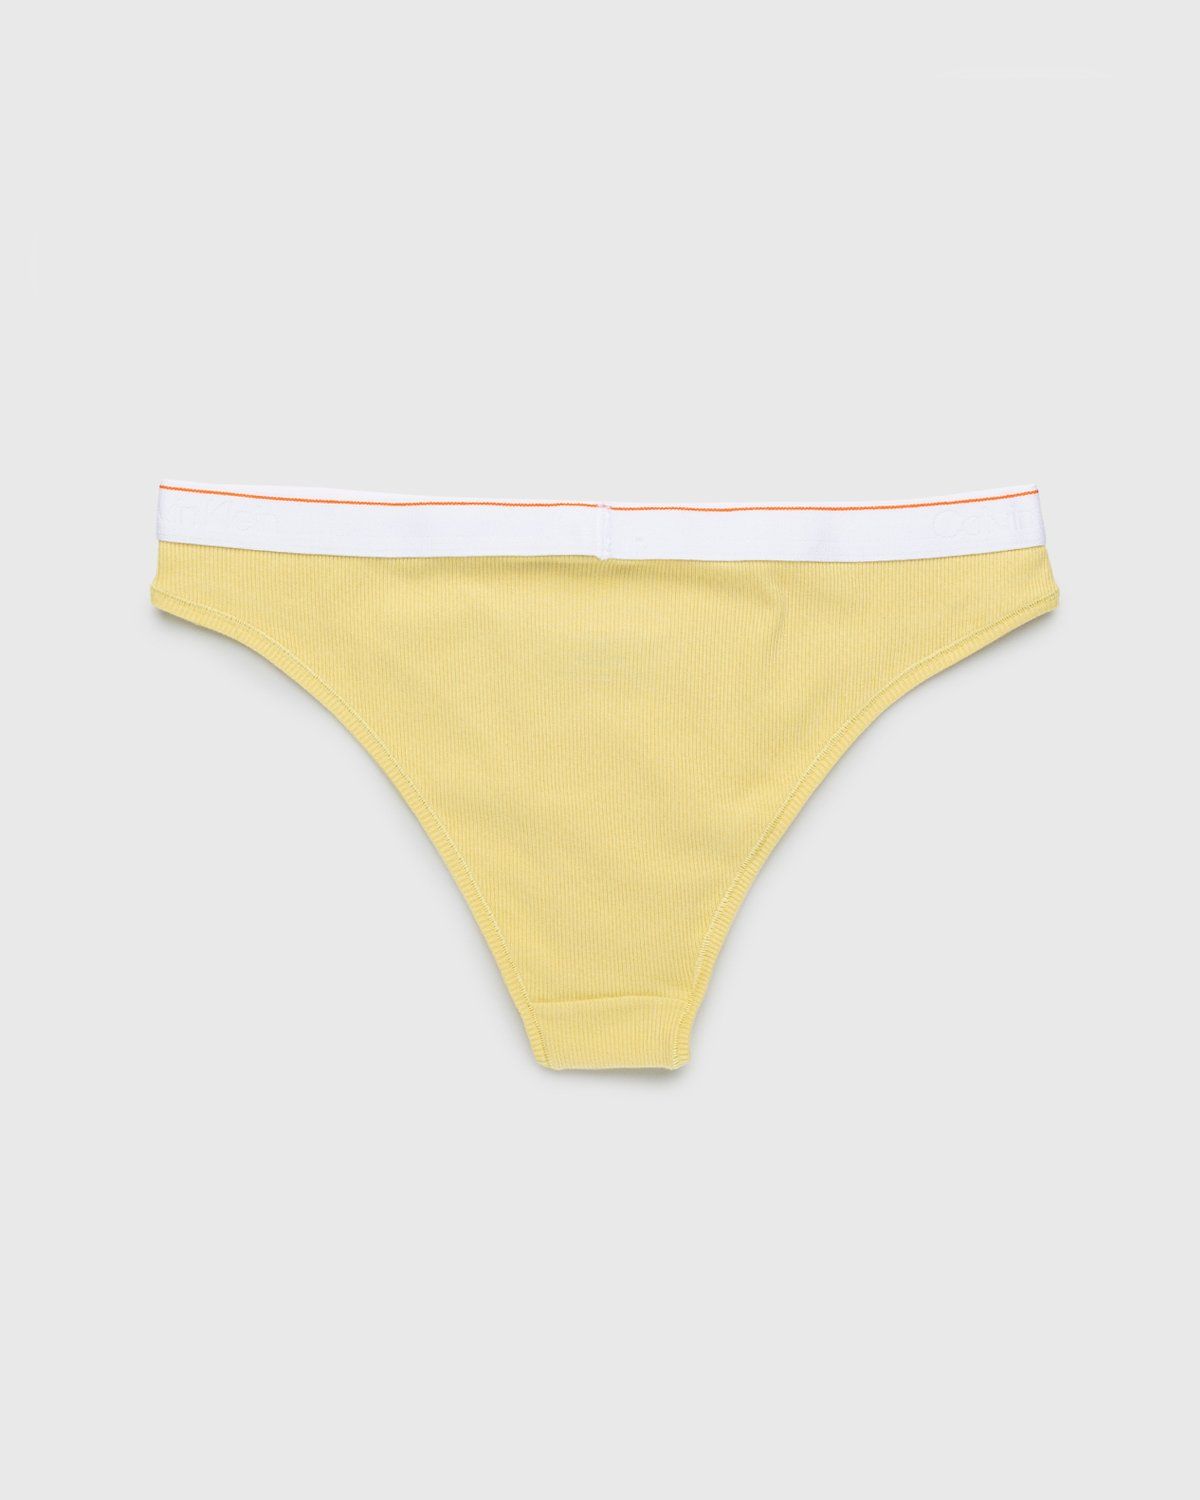 Calvin Klein High-Waist Panties for Women